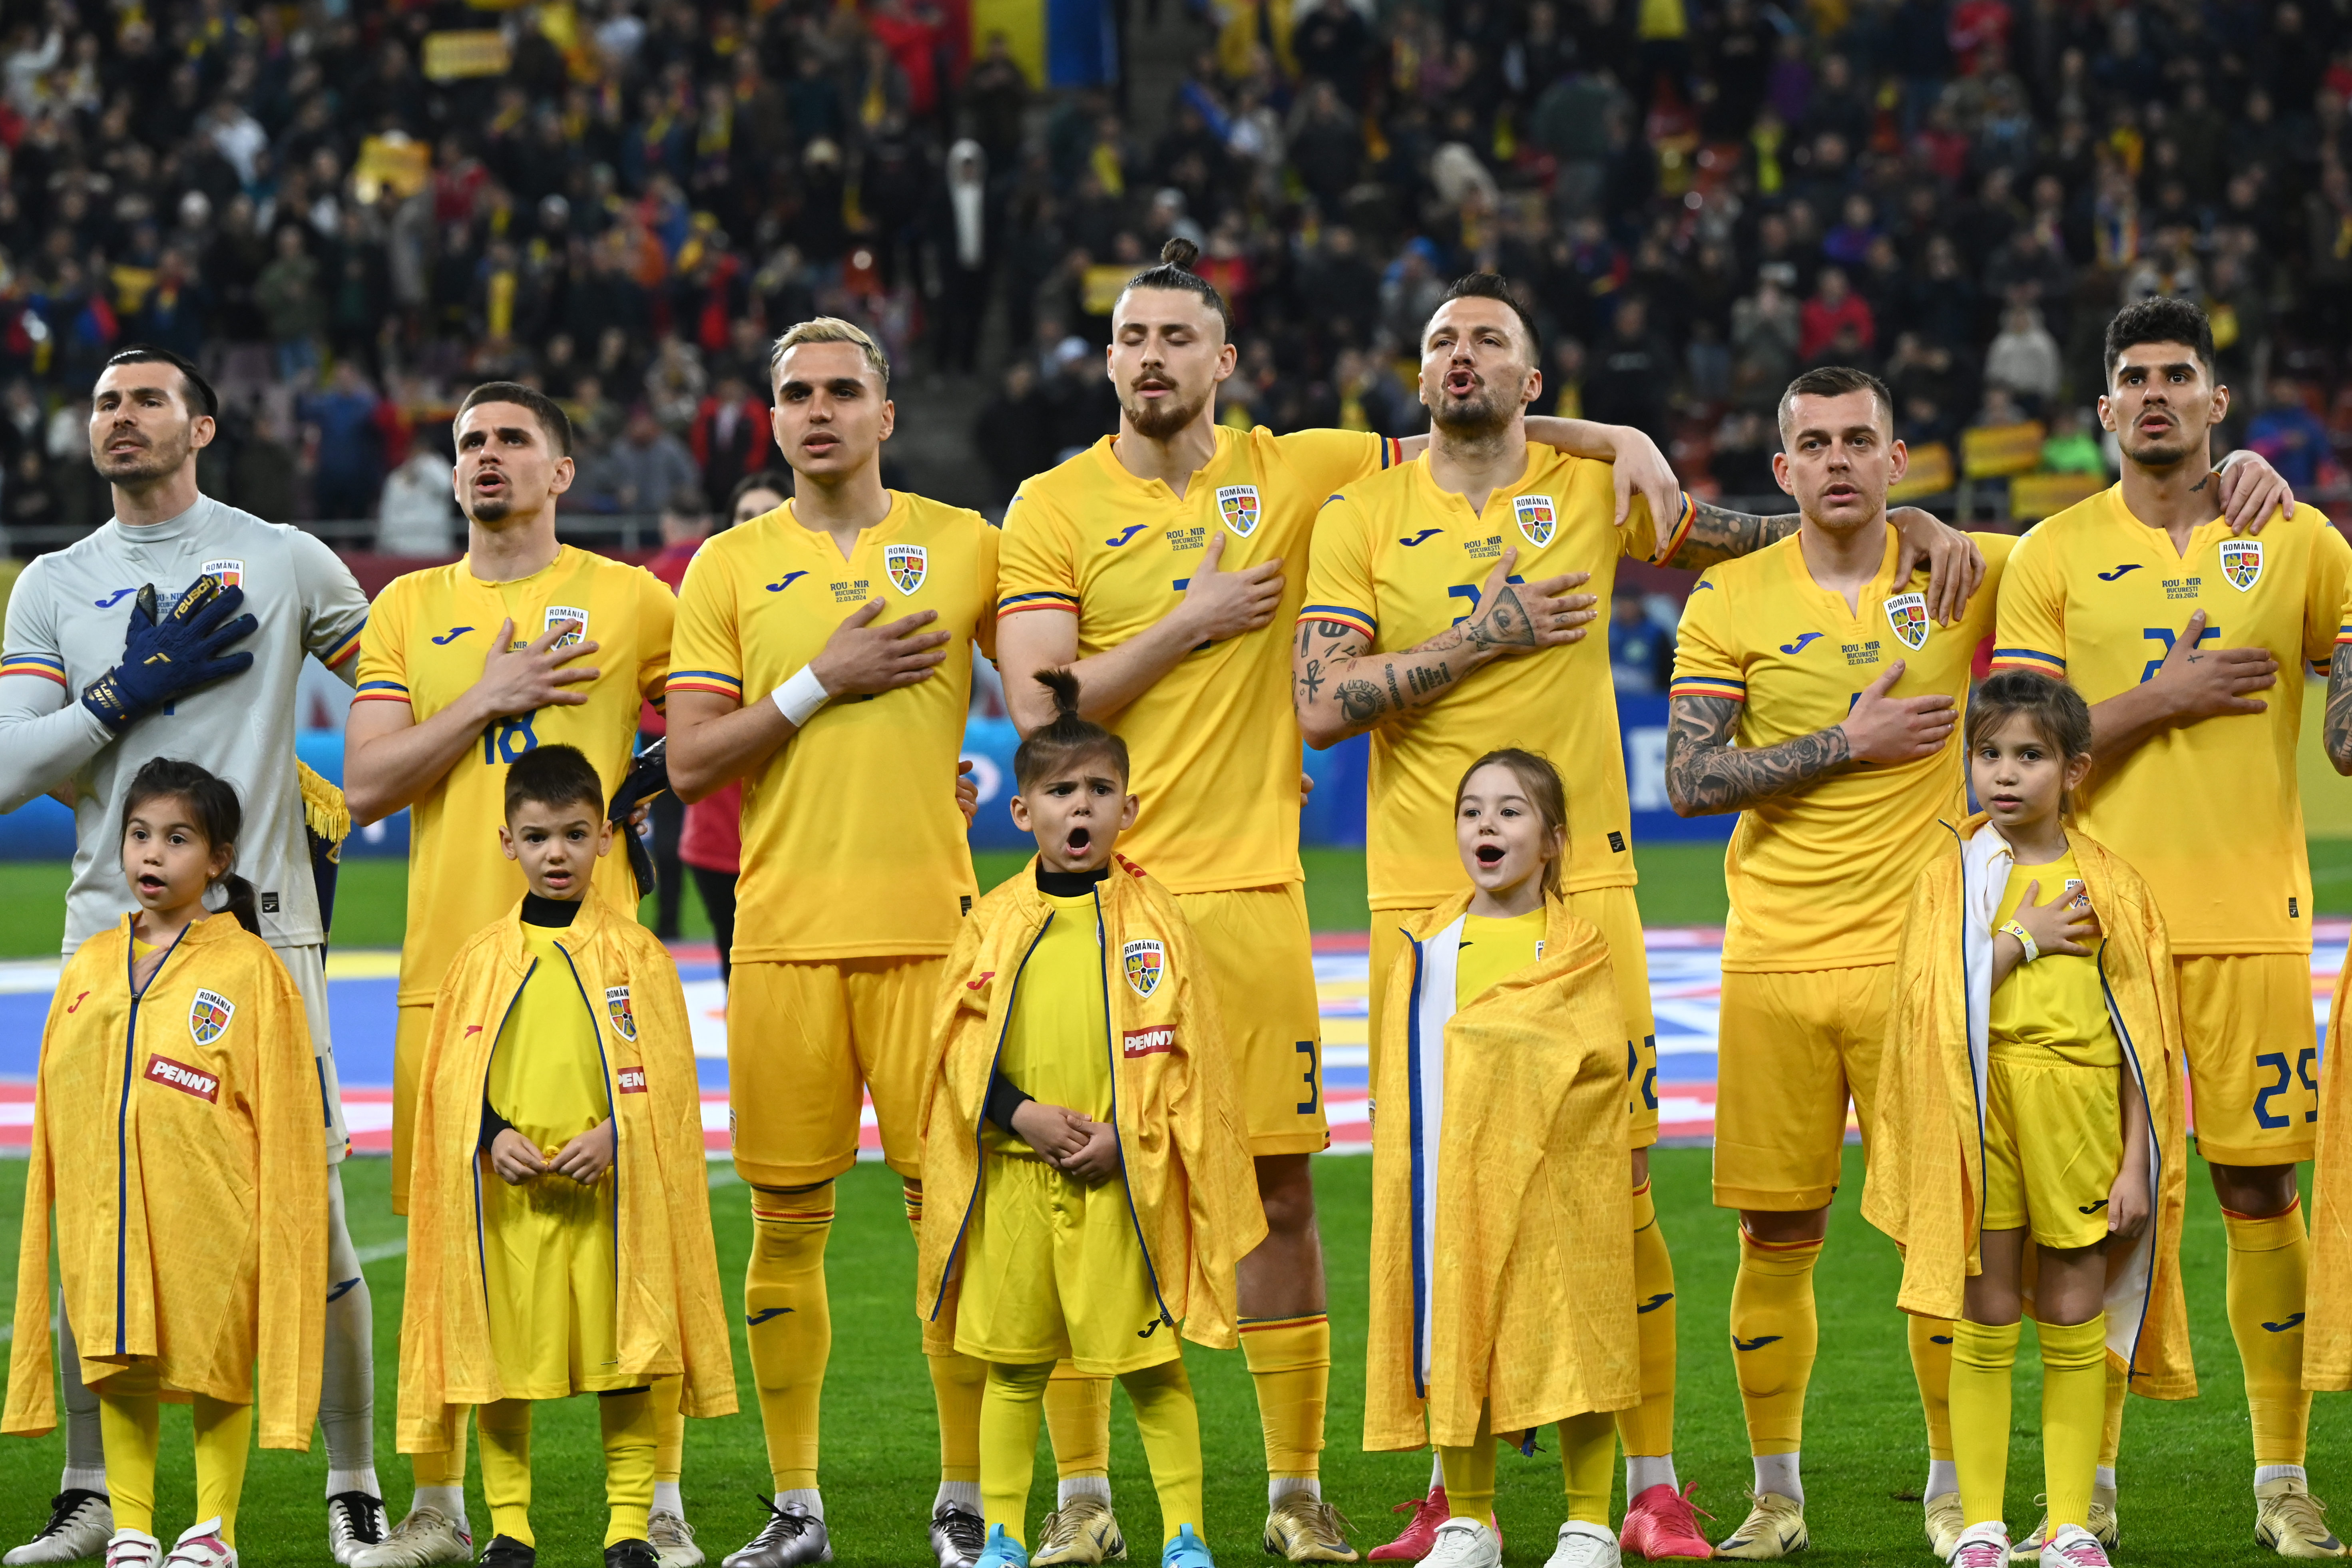 ”Va fi o surpriză la EURO!” Cine este fotbalistul care îi laudă pe ”Tricolori”